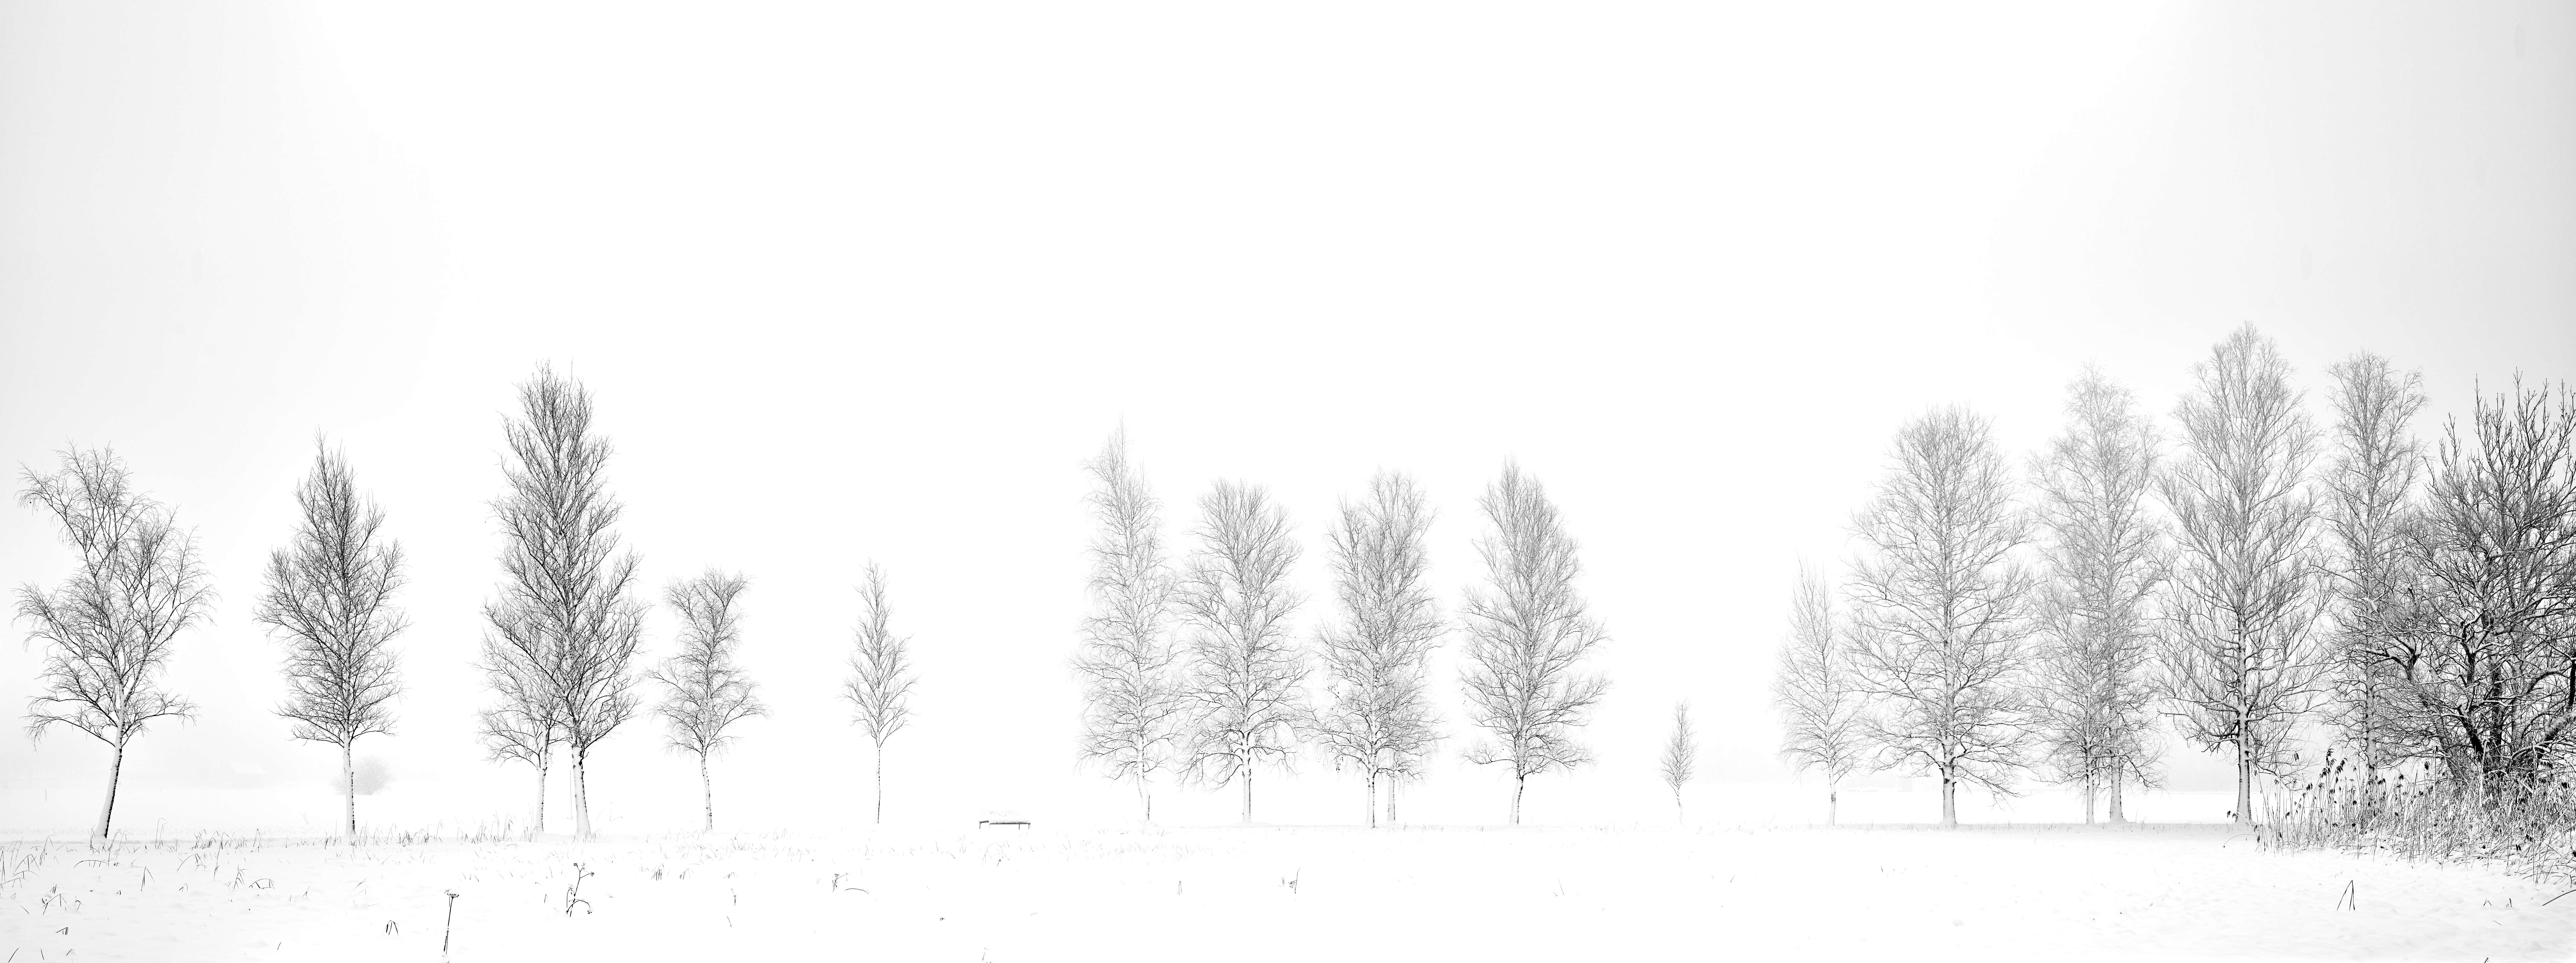 Baumreihe im Schnee, minimalistisch